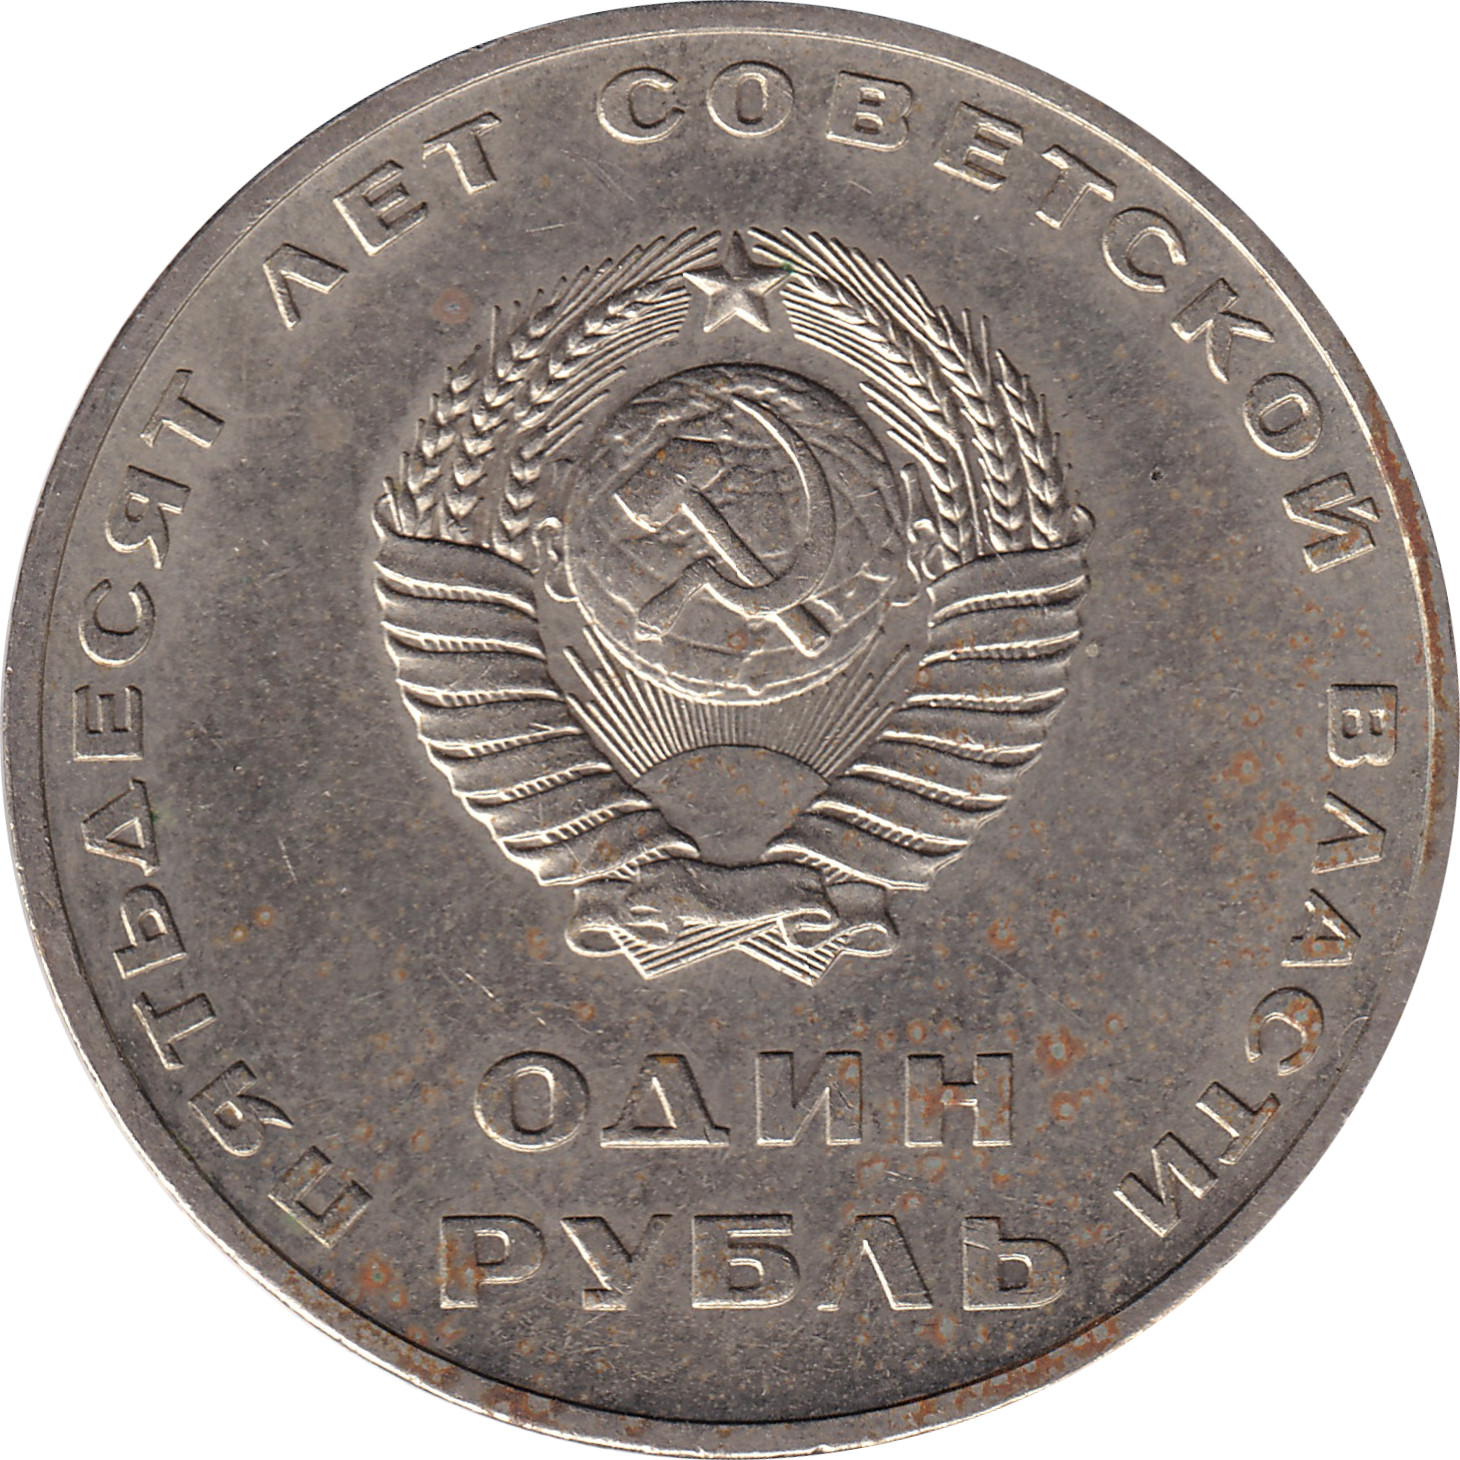 1 ruble - Soviet power - 50 years